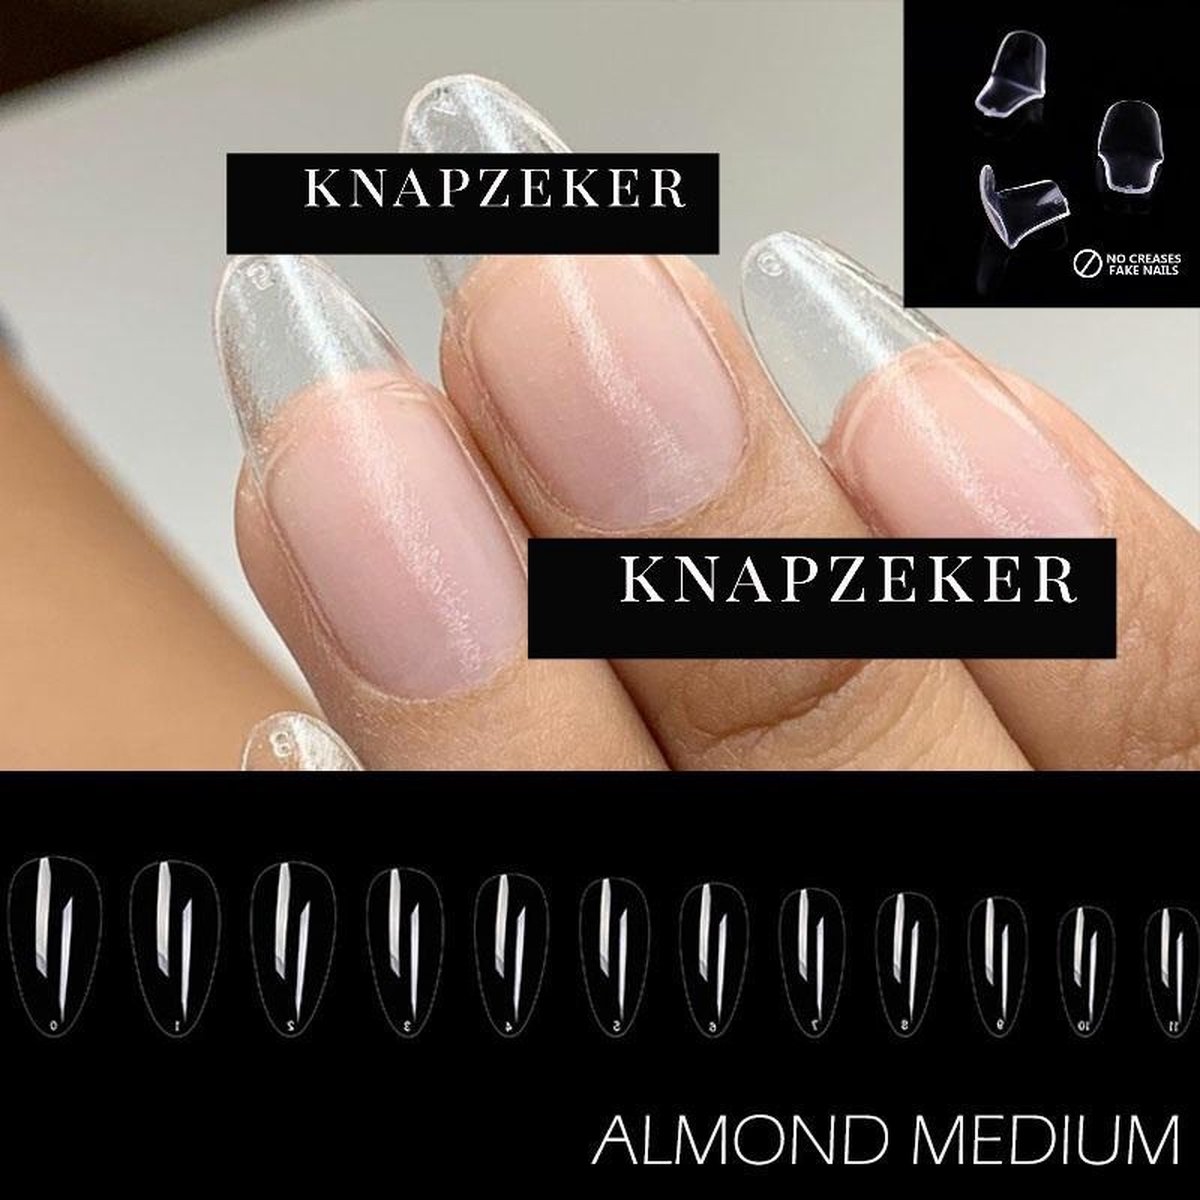 Gel Soft Flex Nepnagels plaknagels met lijm almond shape nagels press on nails 100% soak-off - Fake nails- Nageltips Full Cover 240 Stuks Transparant / Clear Tips van hoge kwaliteit + nagelvijl + lijm